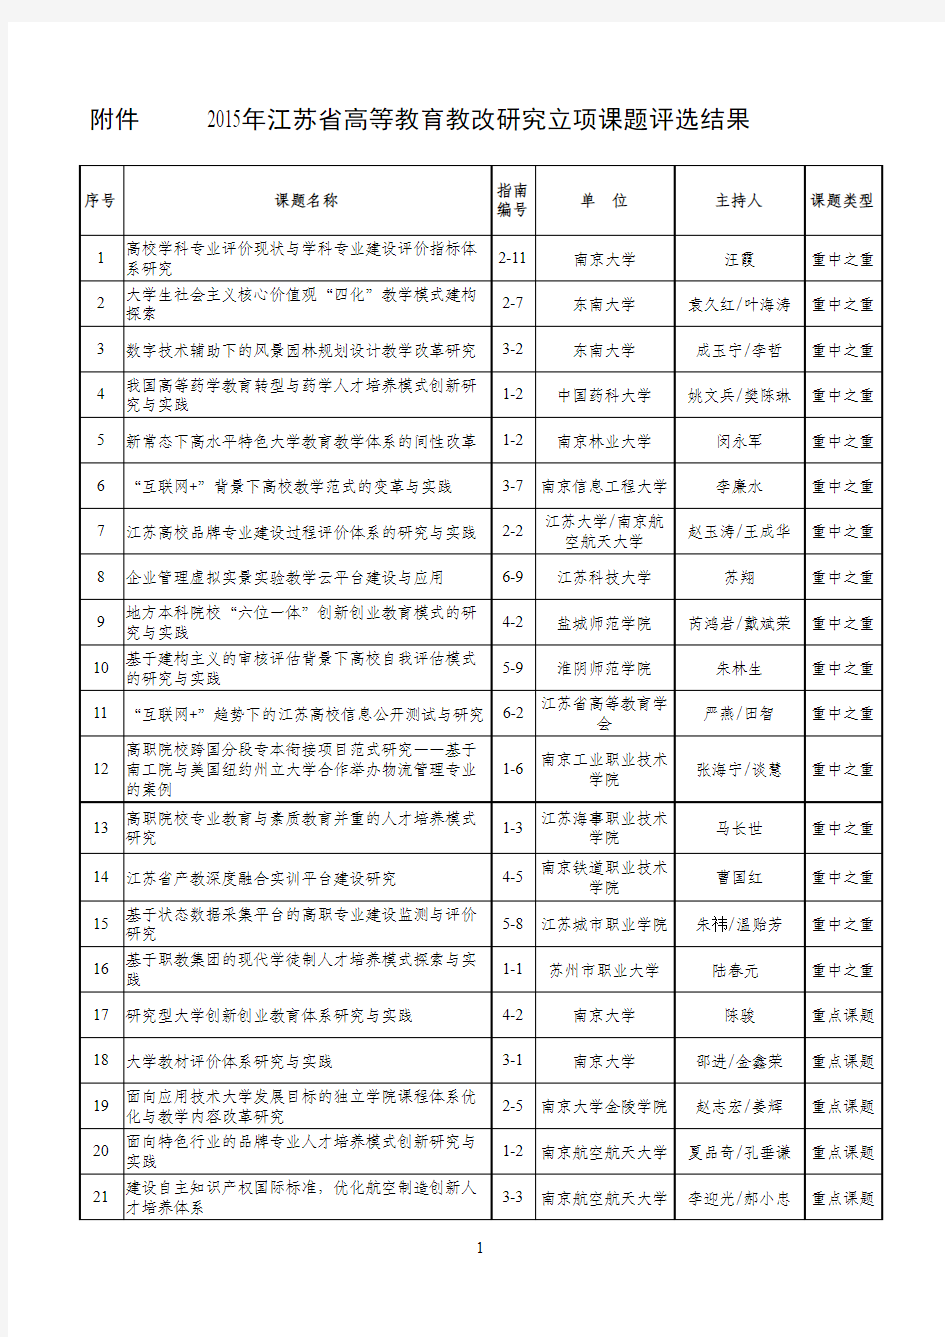 2015年江苏省高等教育教改研究立项课题评选结果